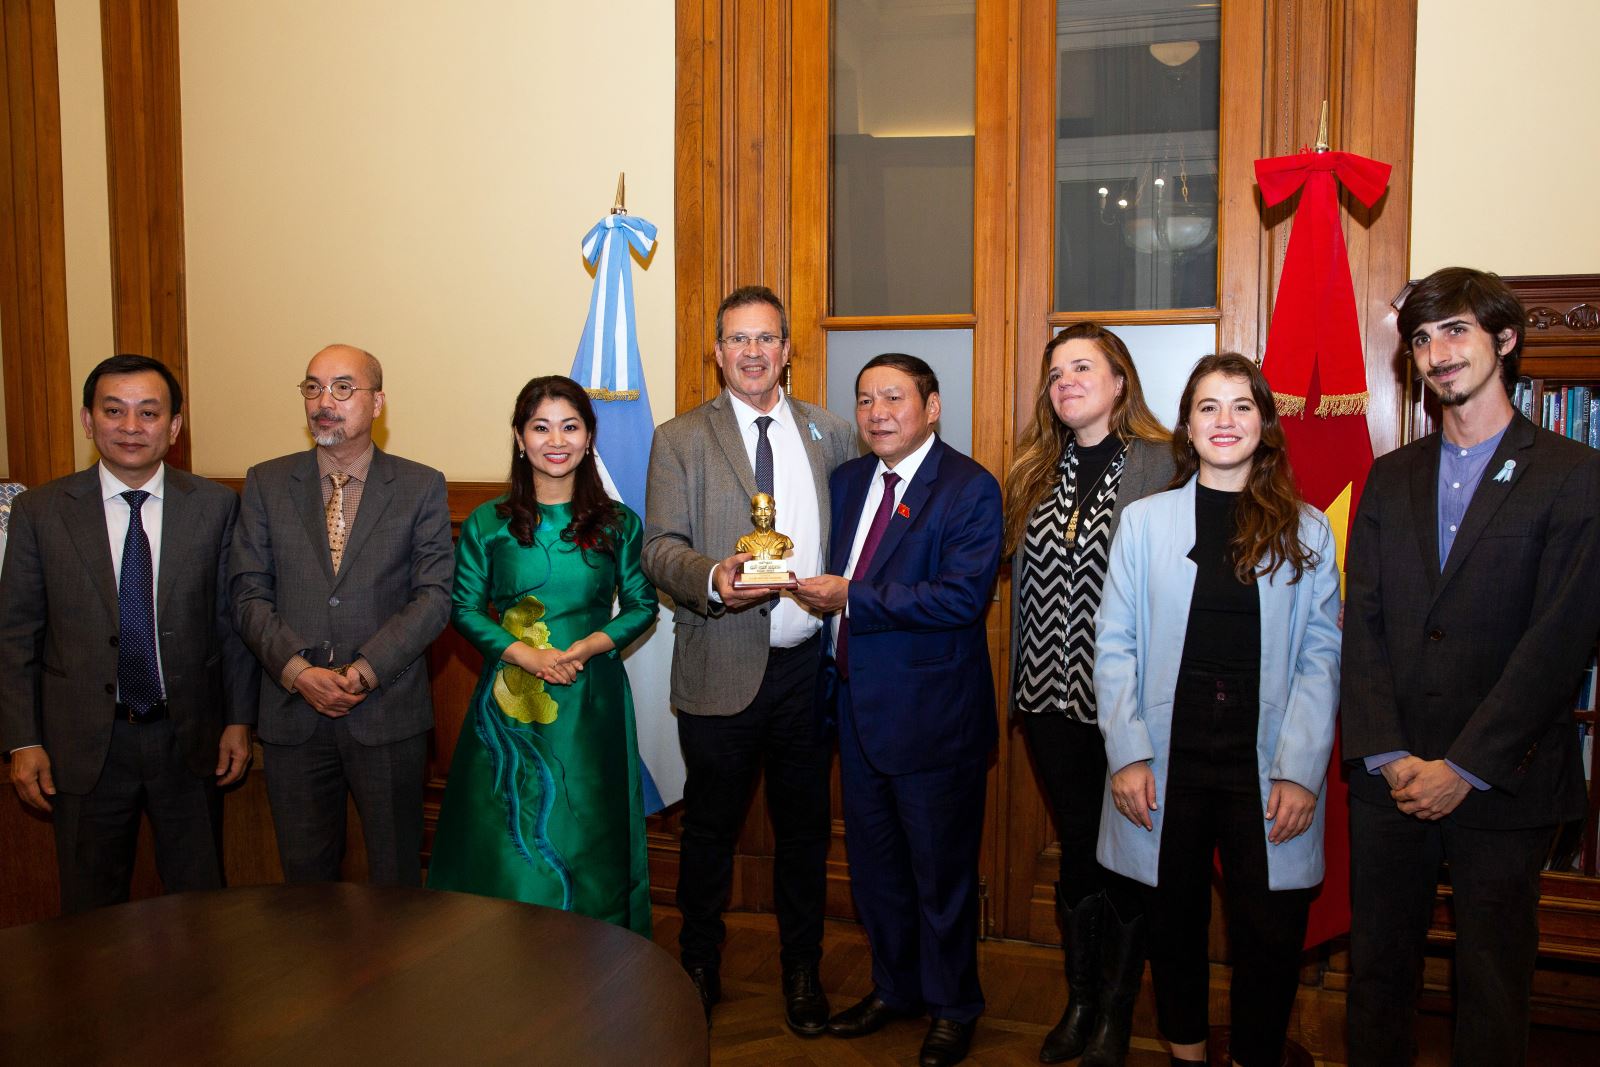 Bộ trưởng Nguyễn Văn Hùng: Hợp tác văn hóa  Việt Nam - Argentina có nhiều tiềm năng, dư địa  phát triển mạnh mẽ 